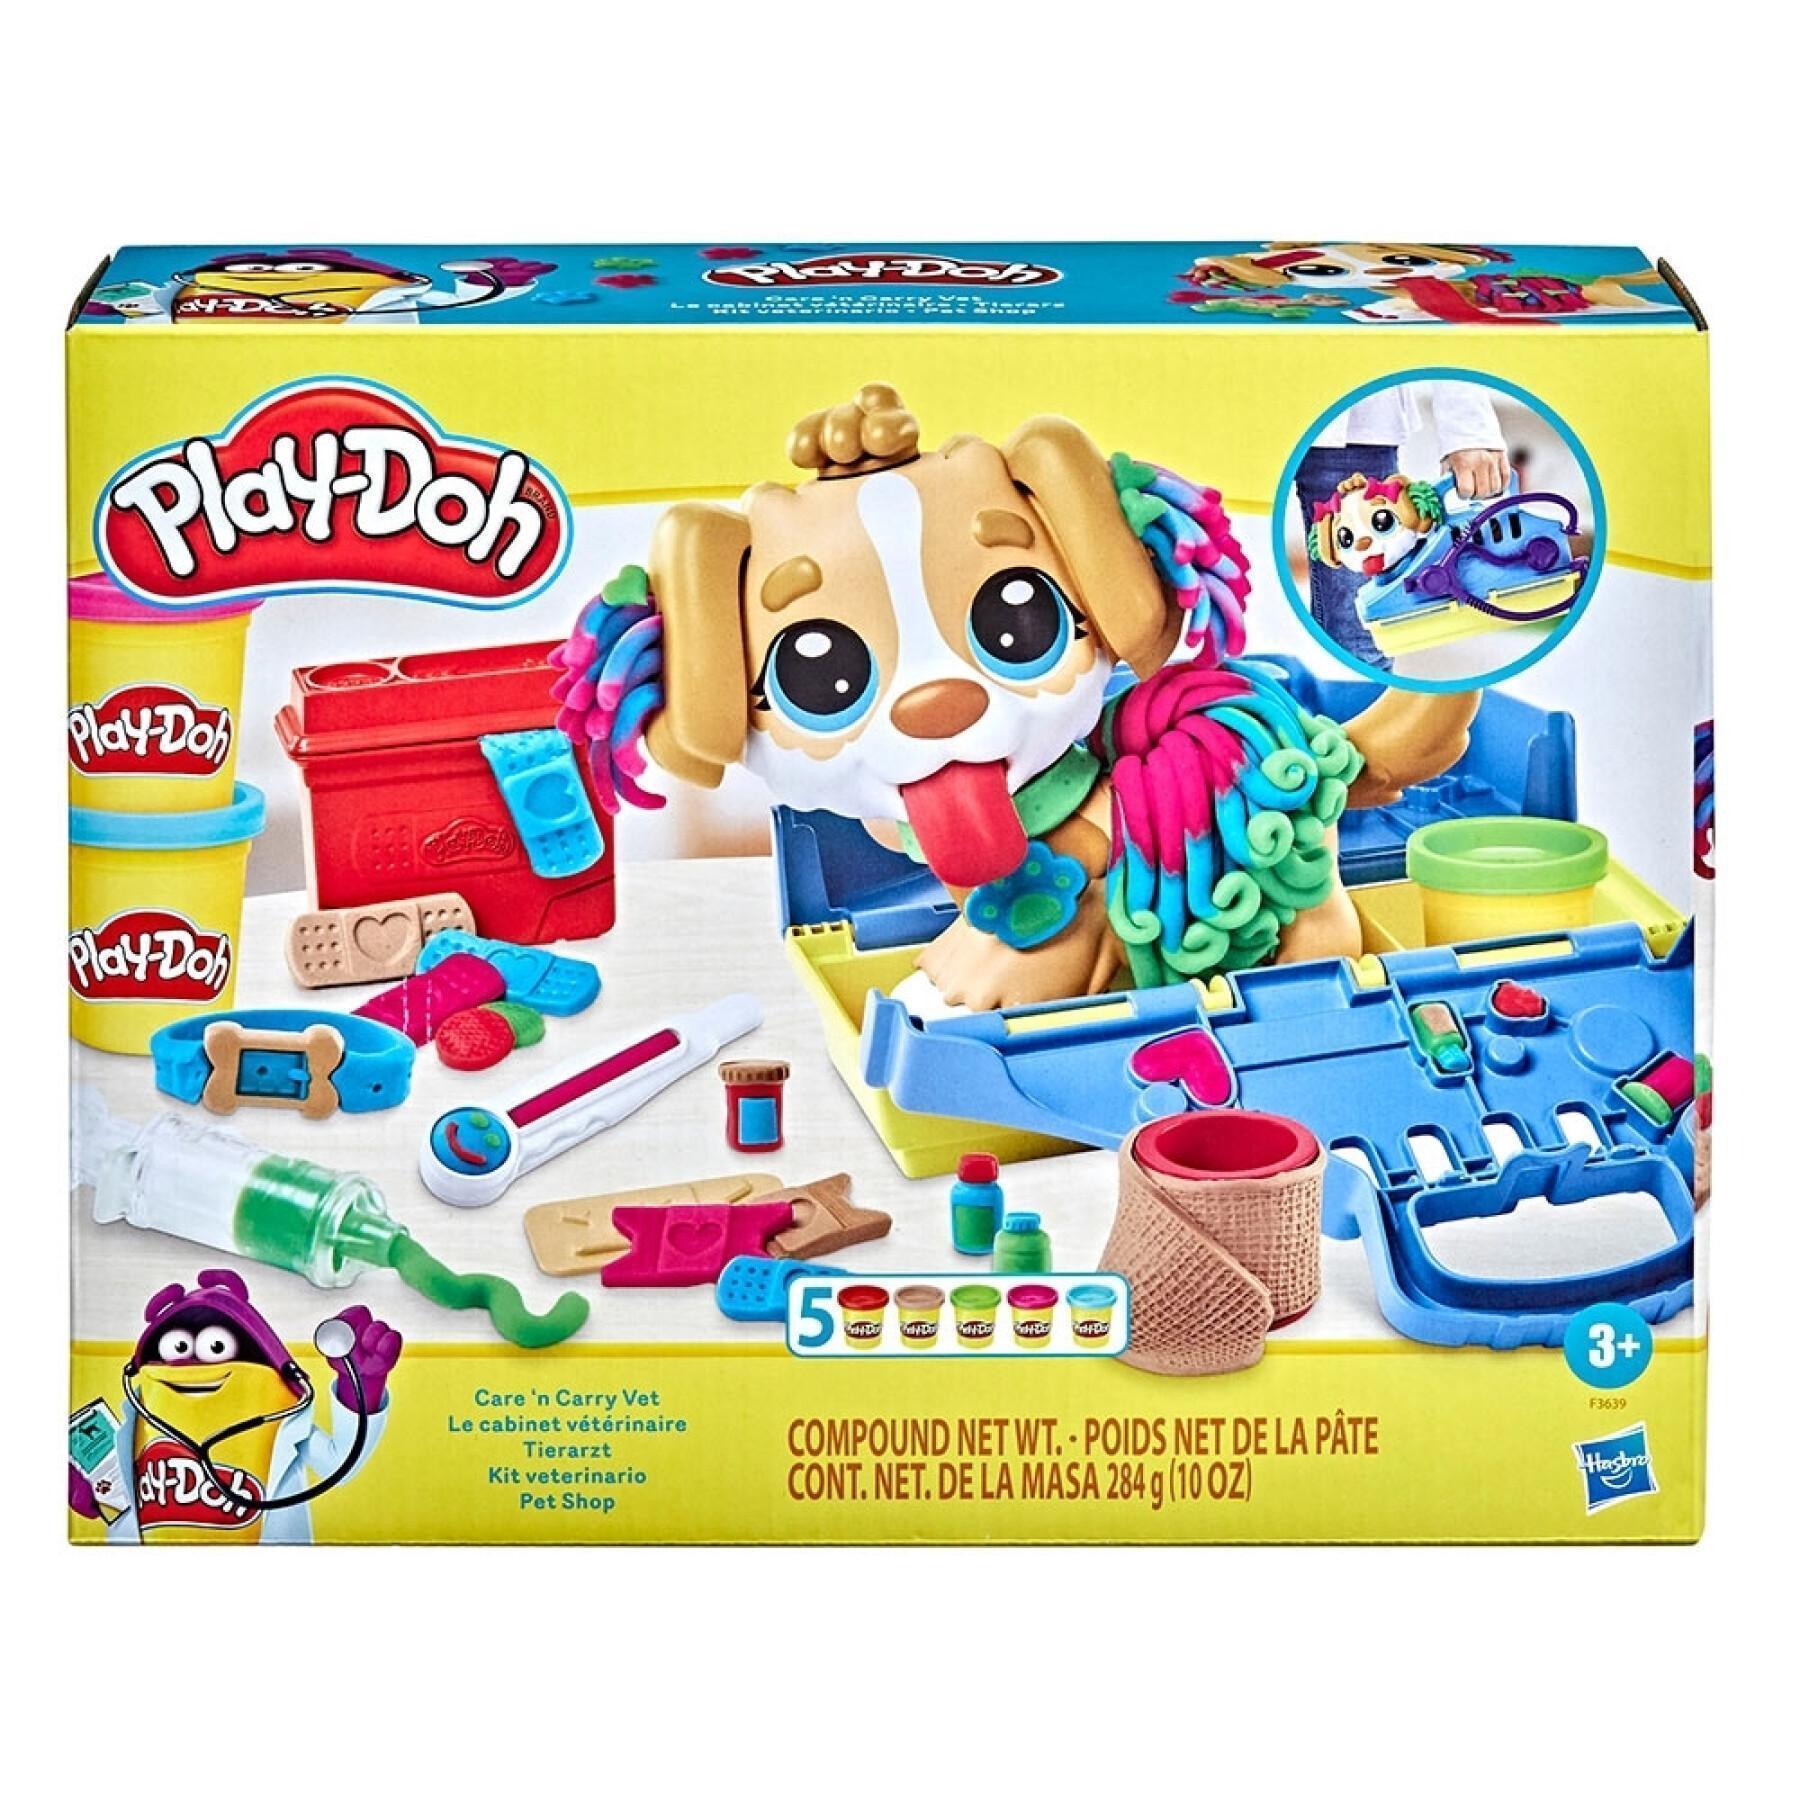 Boetseerklei veterinaire kit Play Doh